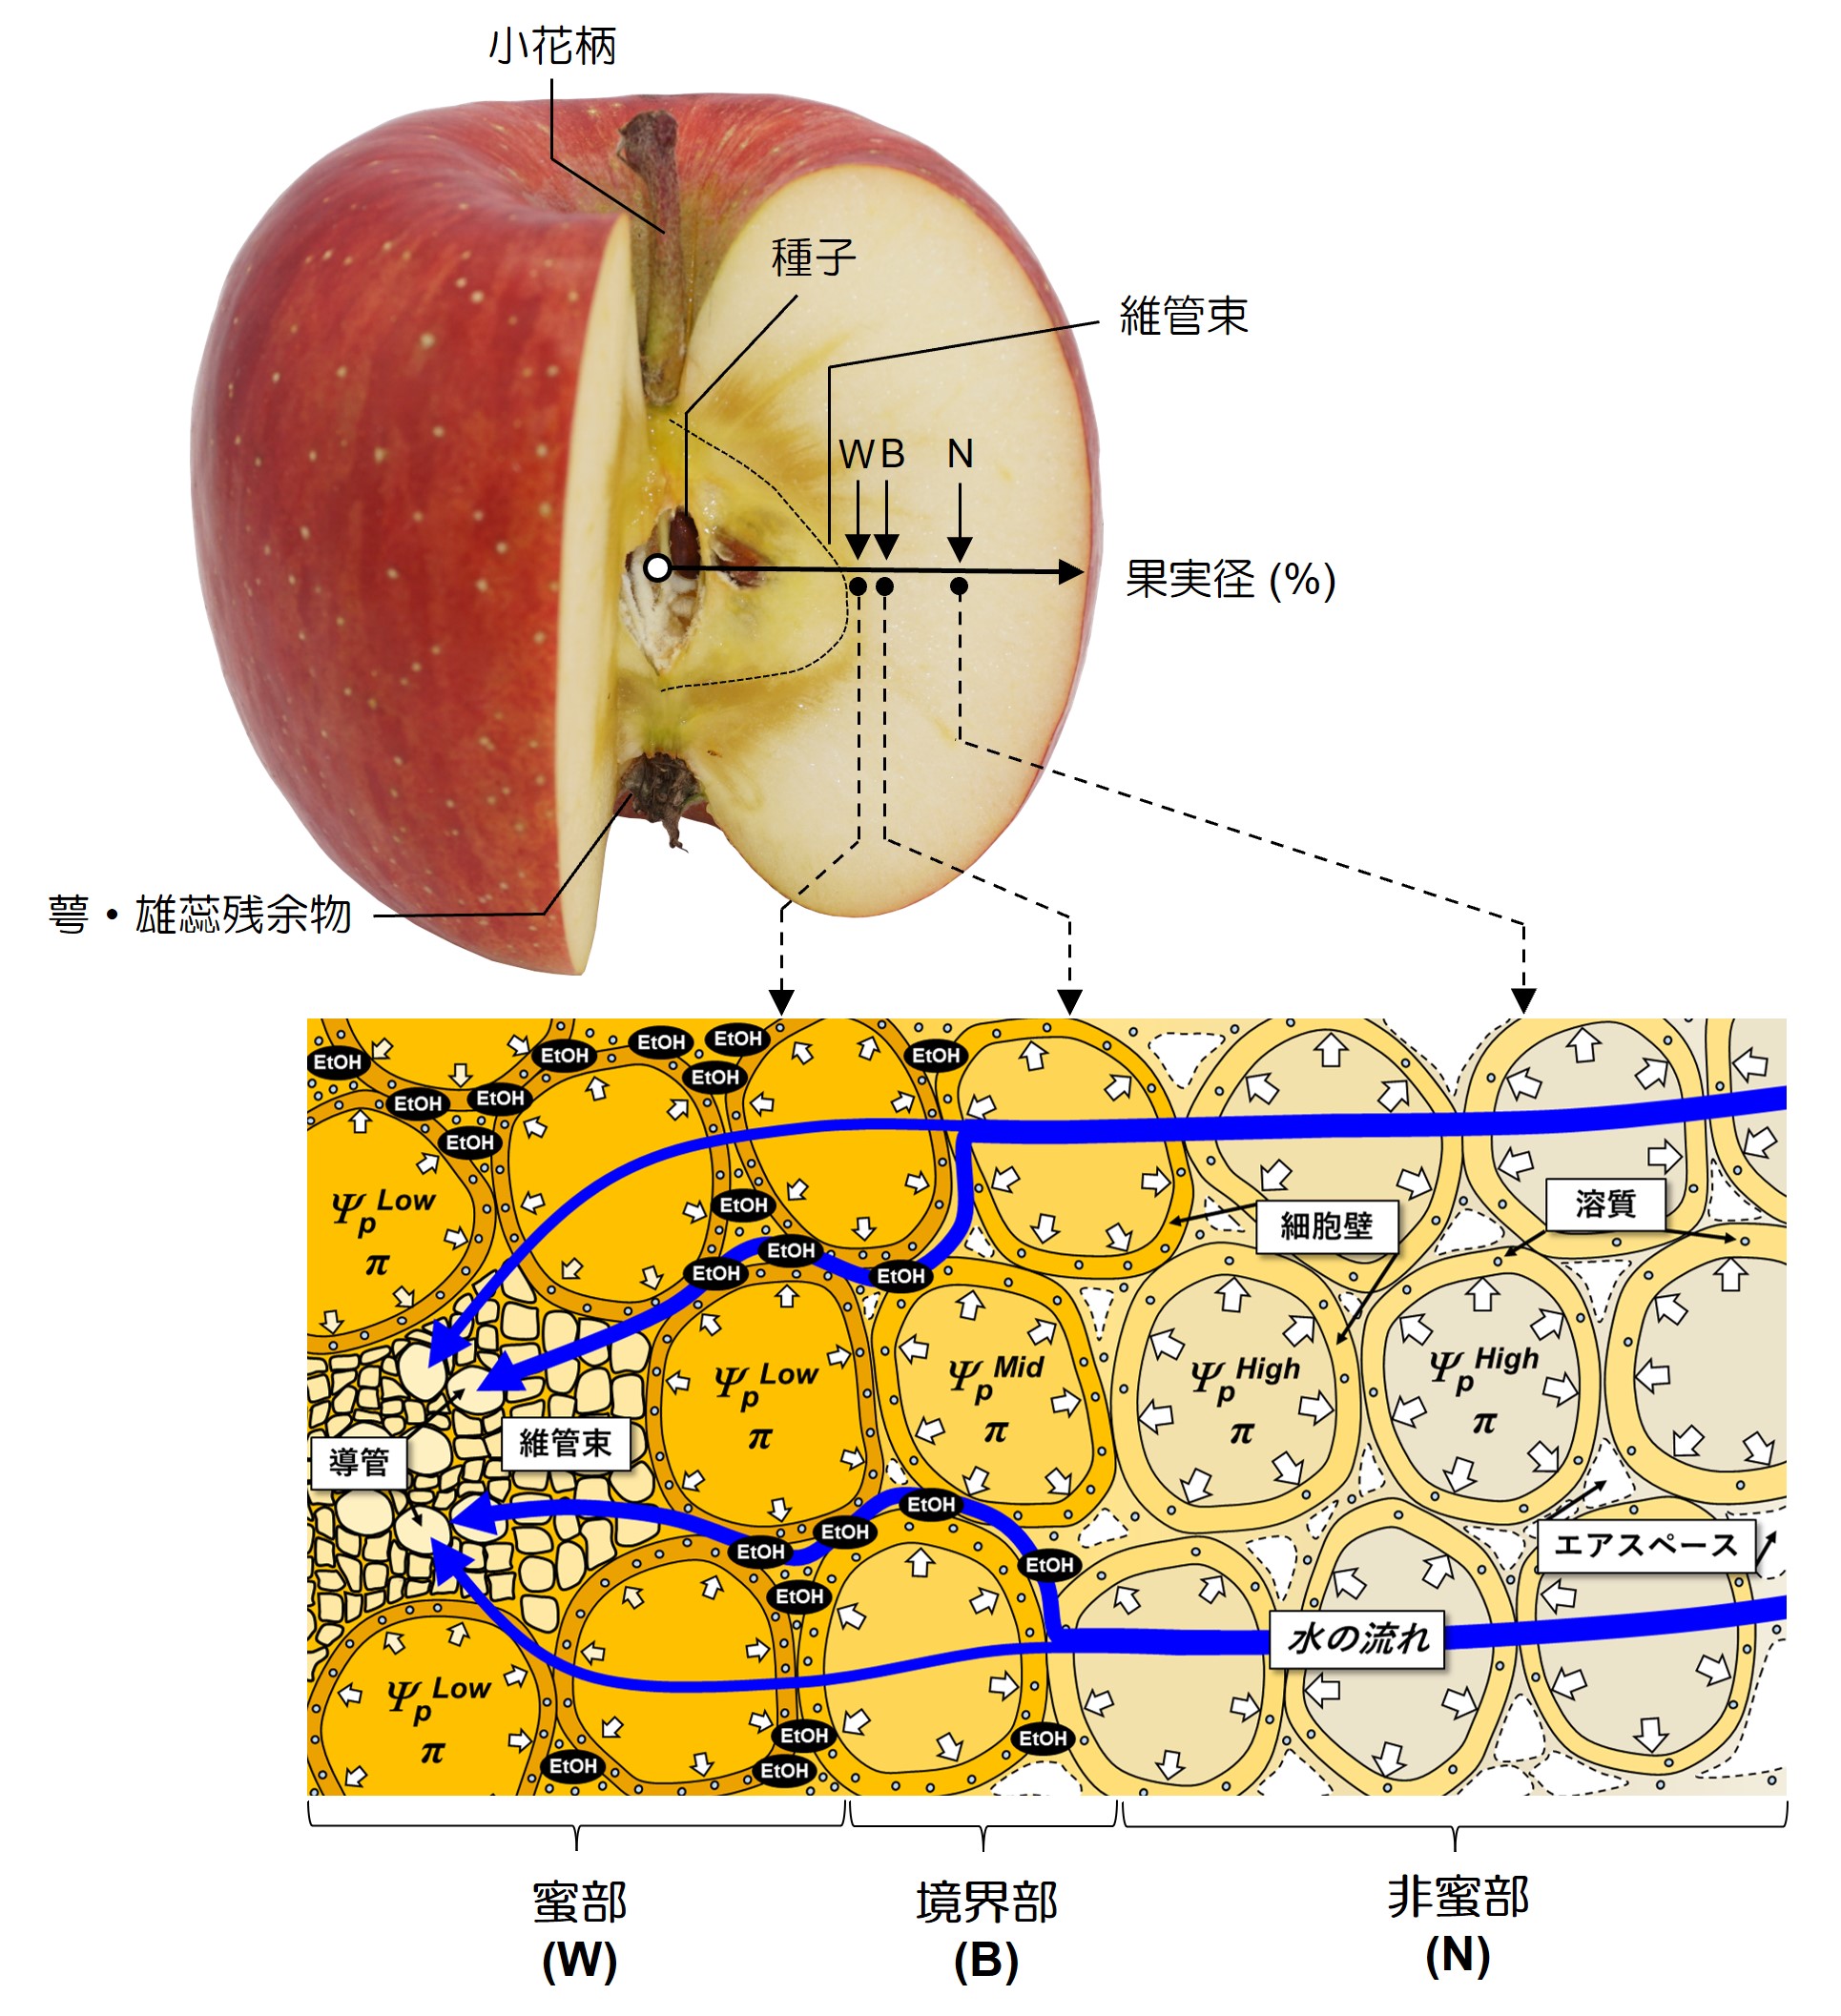 蜜入りリンゴのメカニズム、世界で初めて明らかに！ | 愛媛大学 研究成果ストックサイト